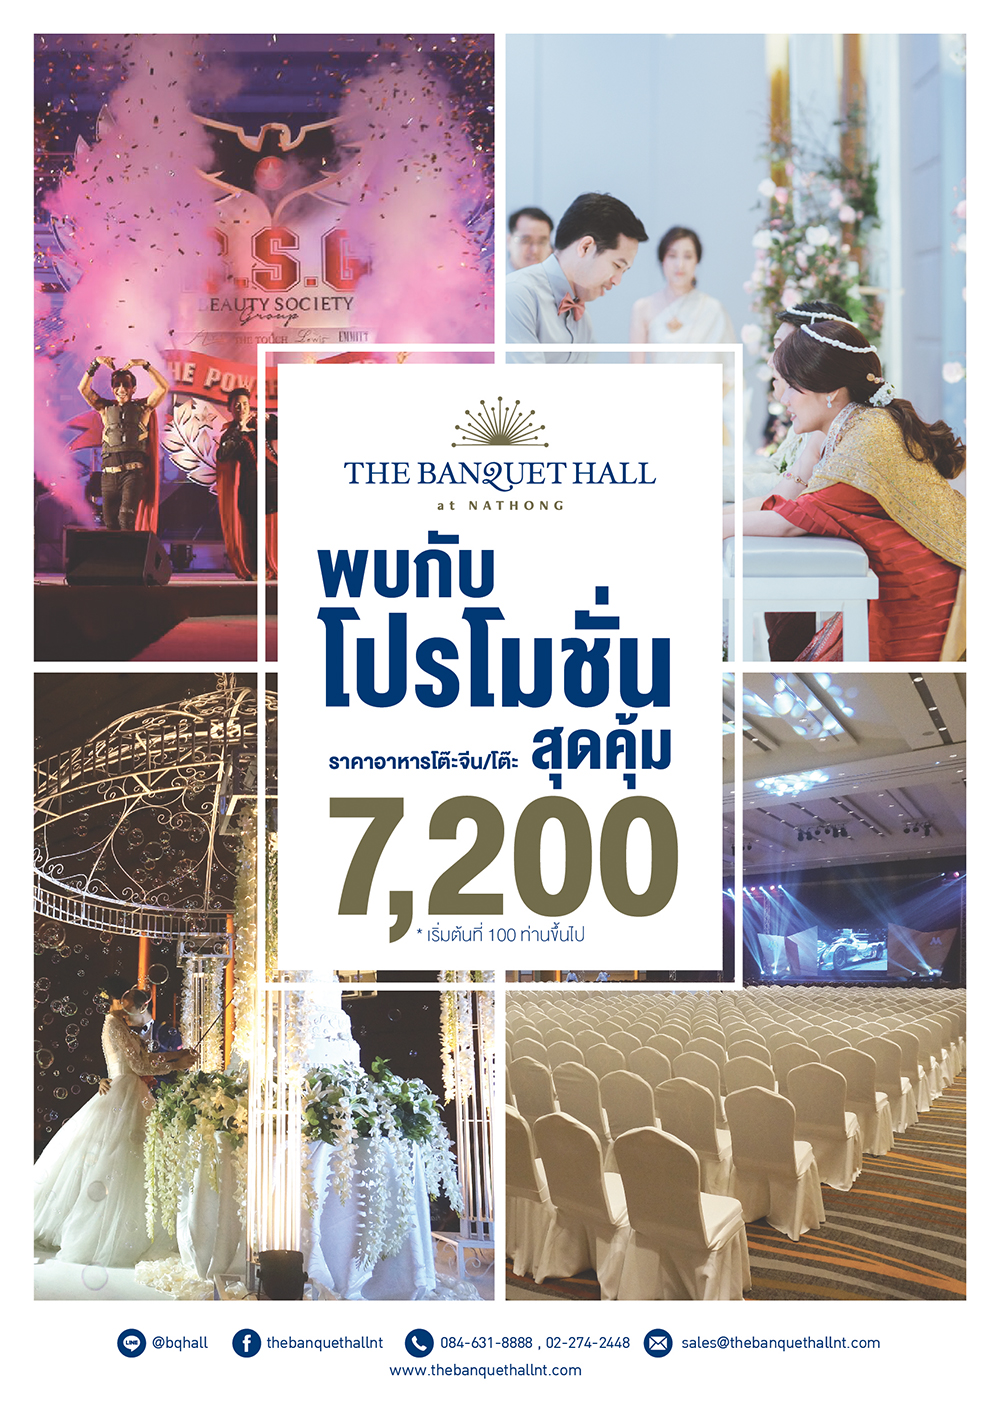 The Banquet Hall at Nathong , สถานที่จัดเลี้ยงแต่งงาน แห่งใหม่ , สถานที่แต่งงาน รัชดา , Wedding Place in Bangkok